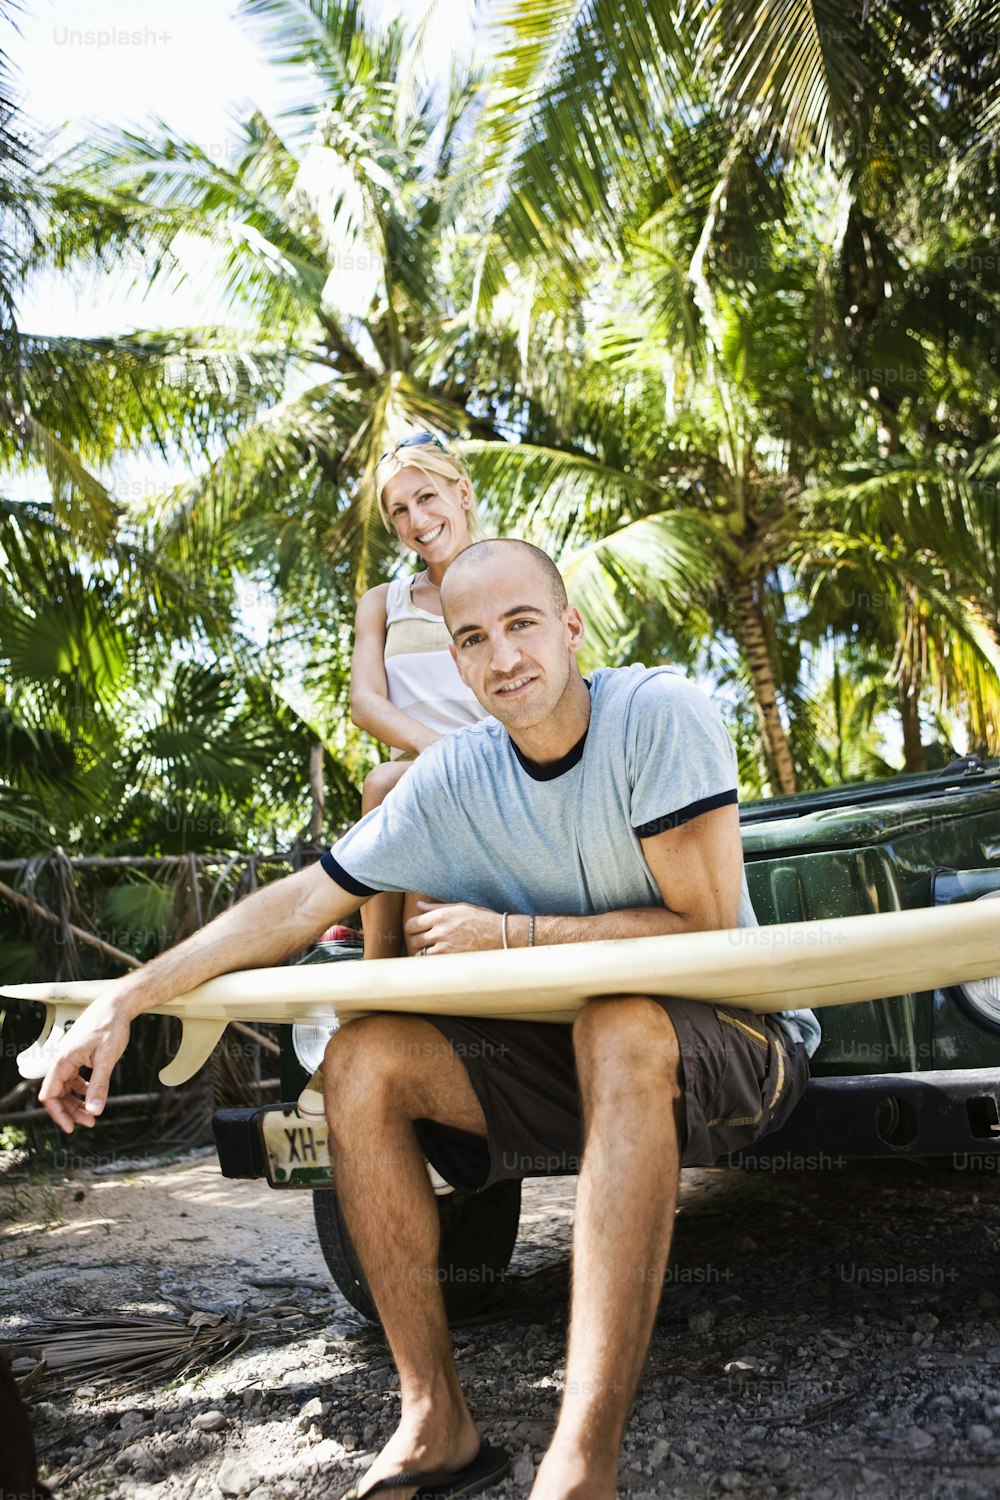 Un homme tenant une planche de surf à côté d’une femme